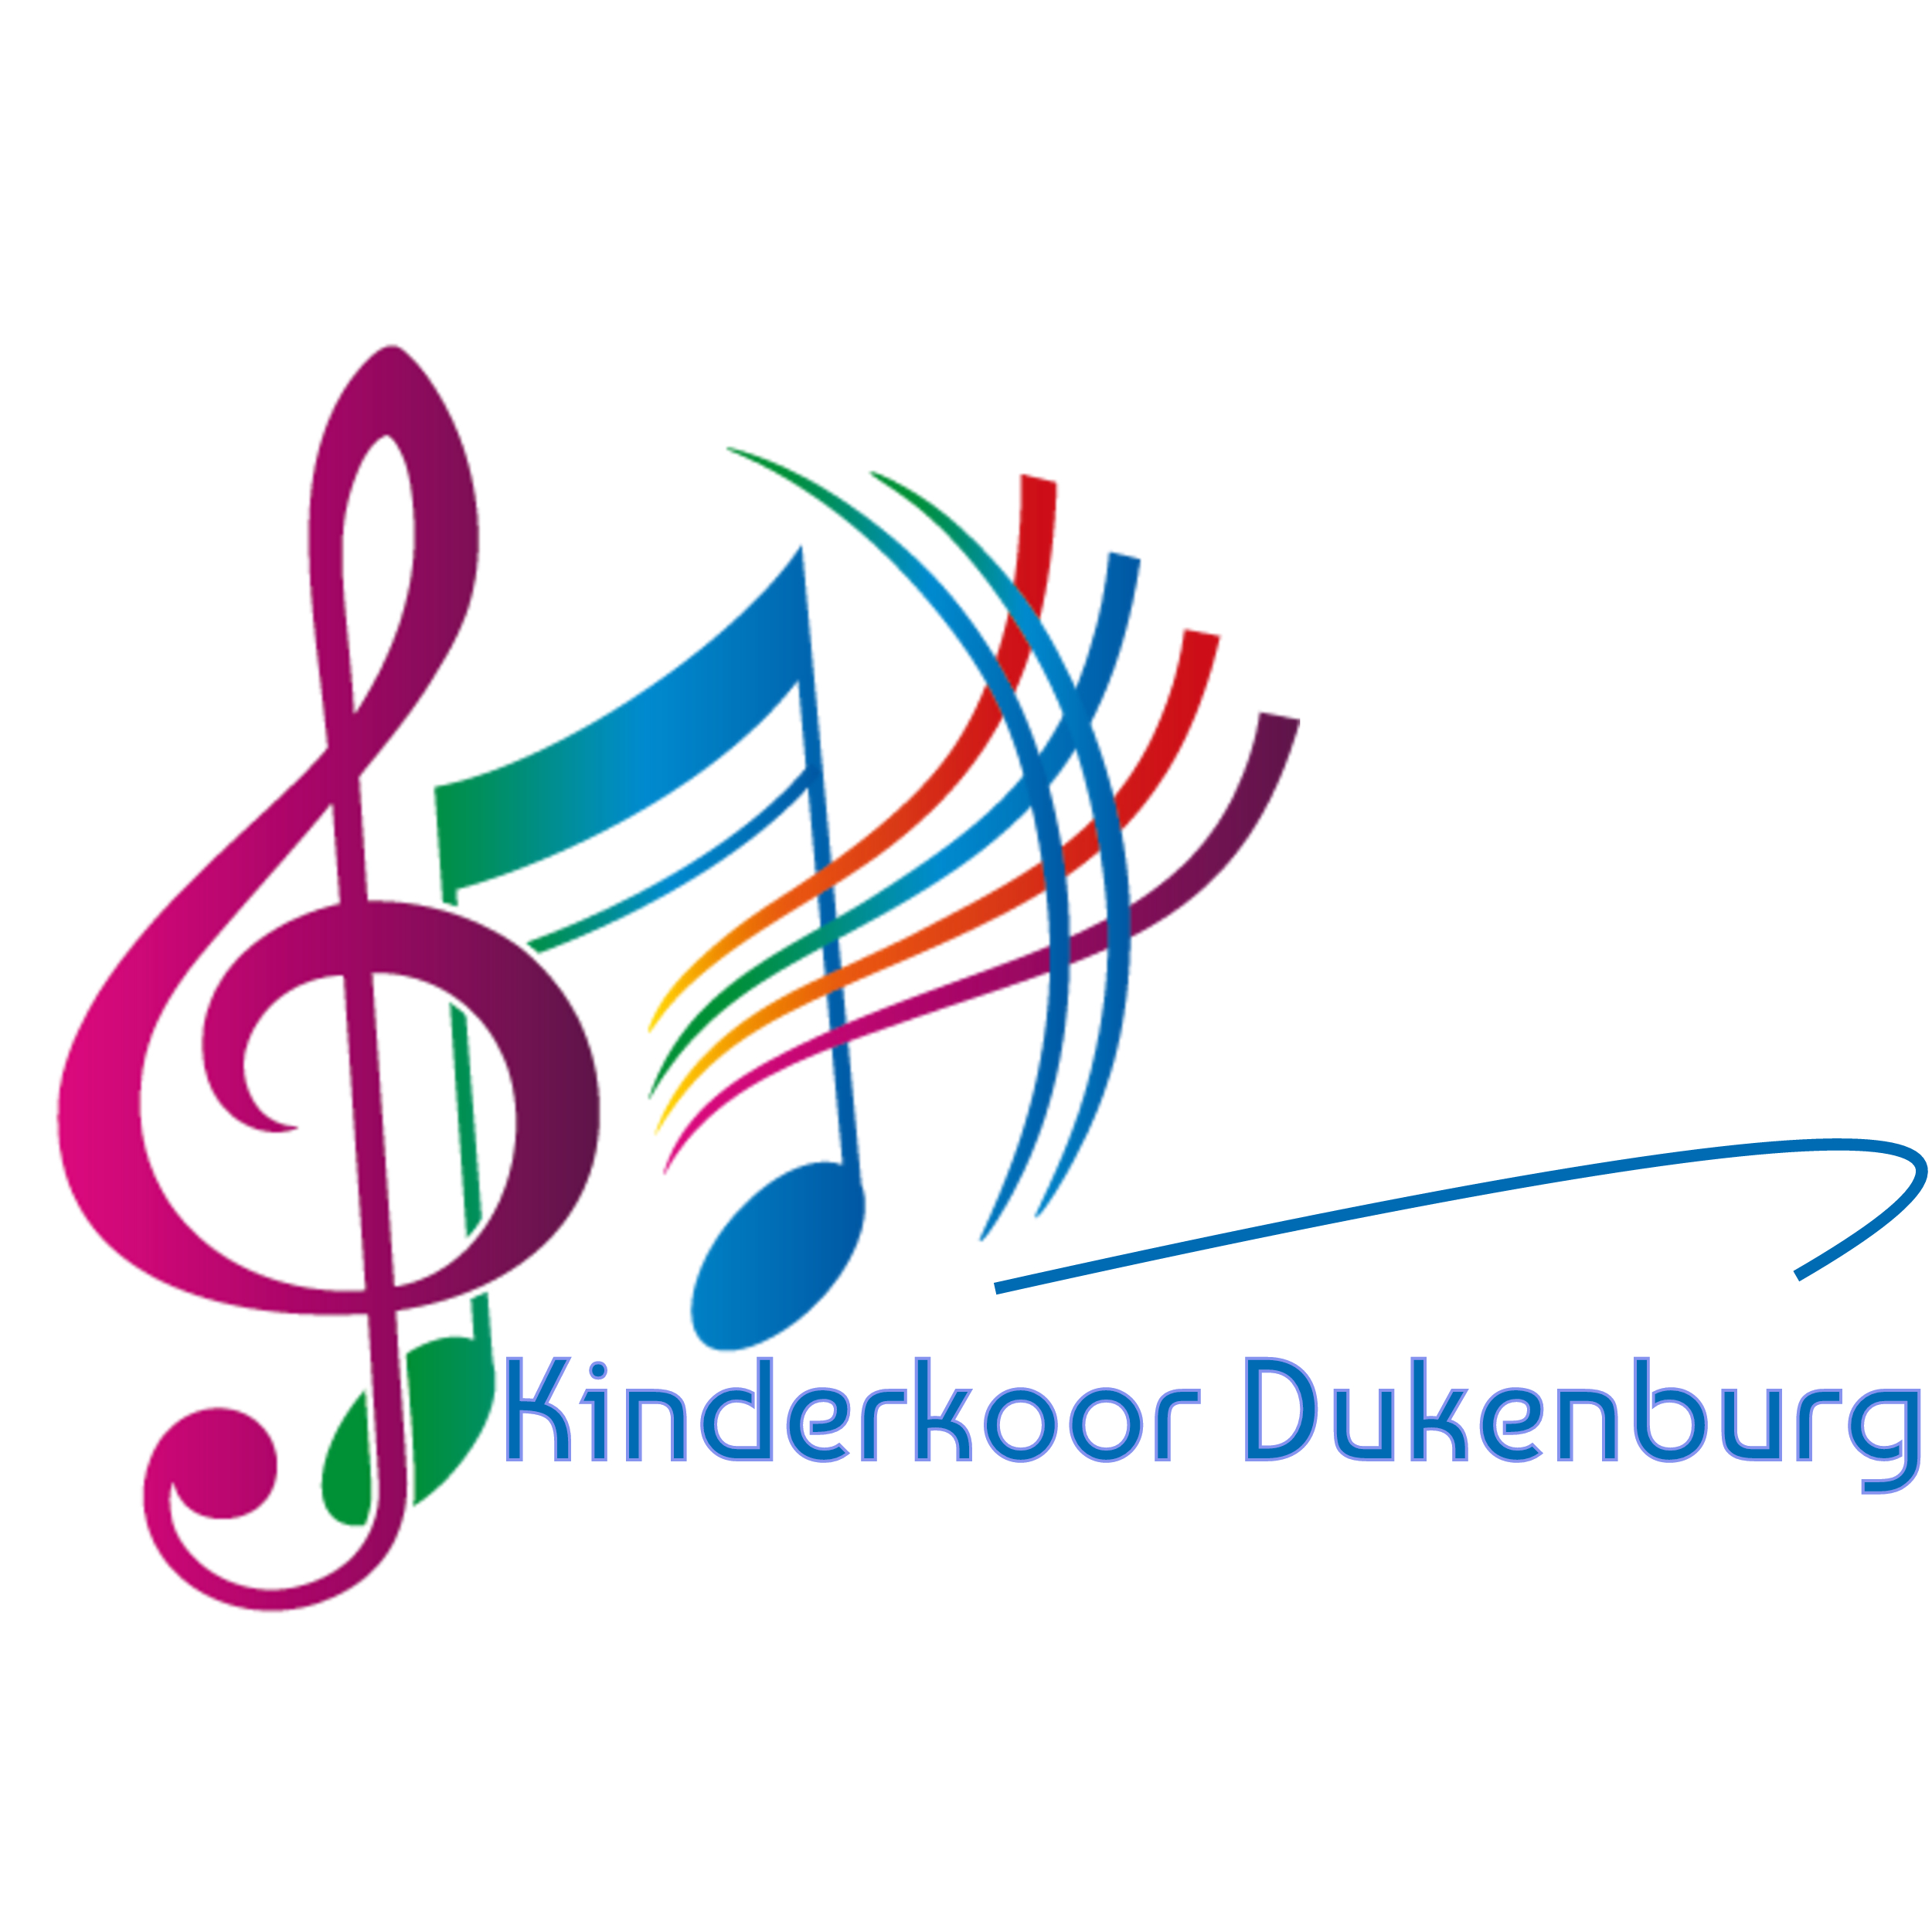 Kinderkoor Dukenburg Nijmegen